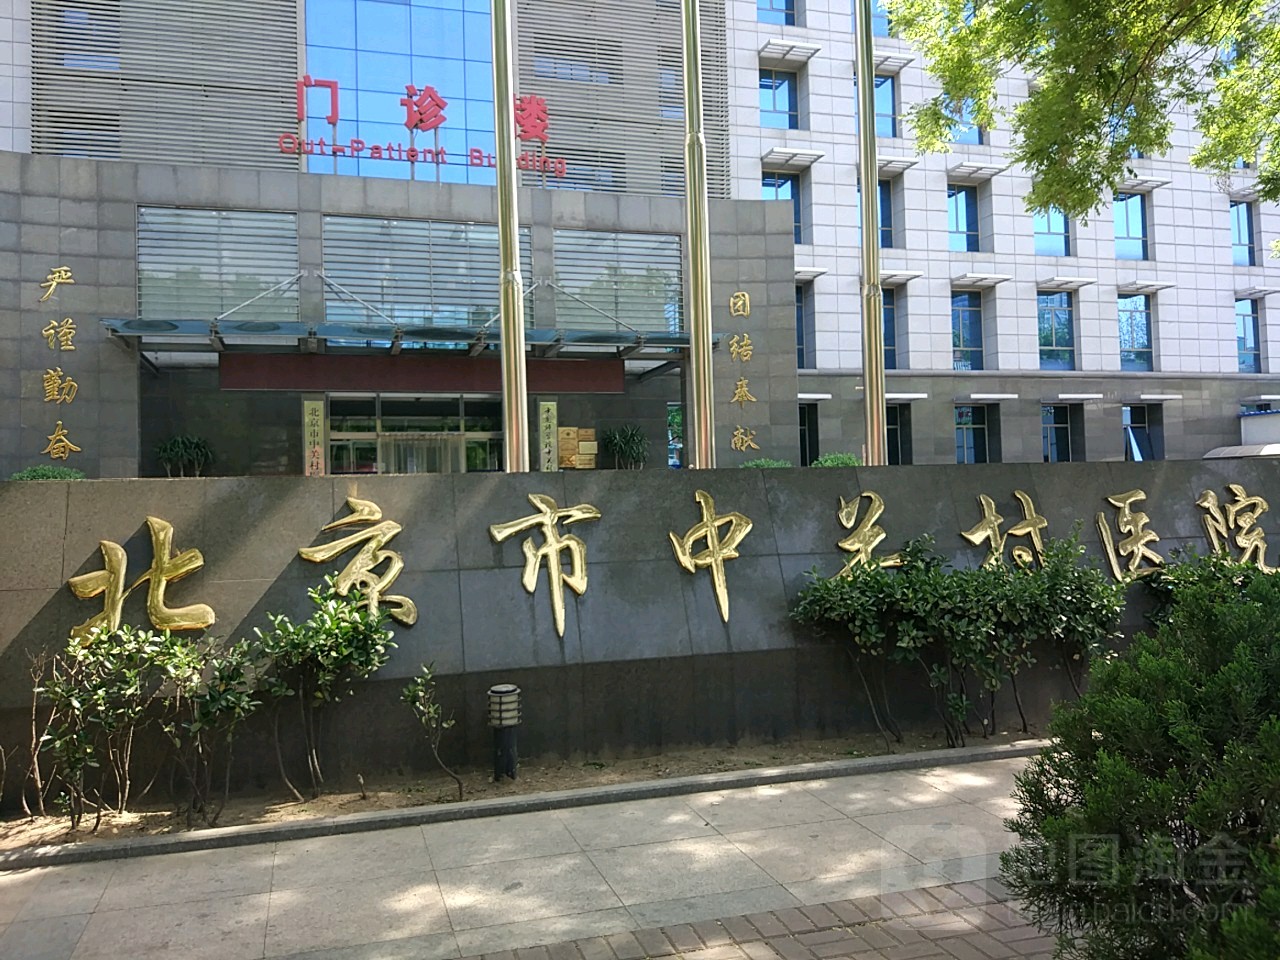 海淀区 羊坊店街道 海军机关大院社区周边综合医院 北京市中关村医院